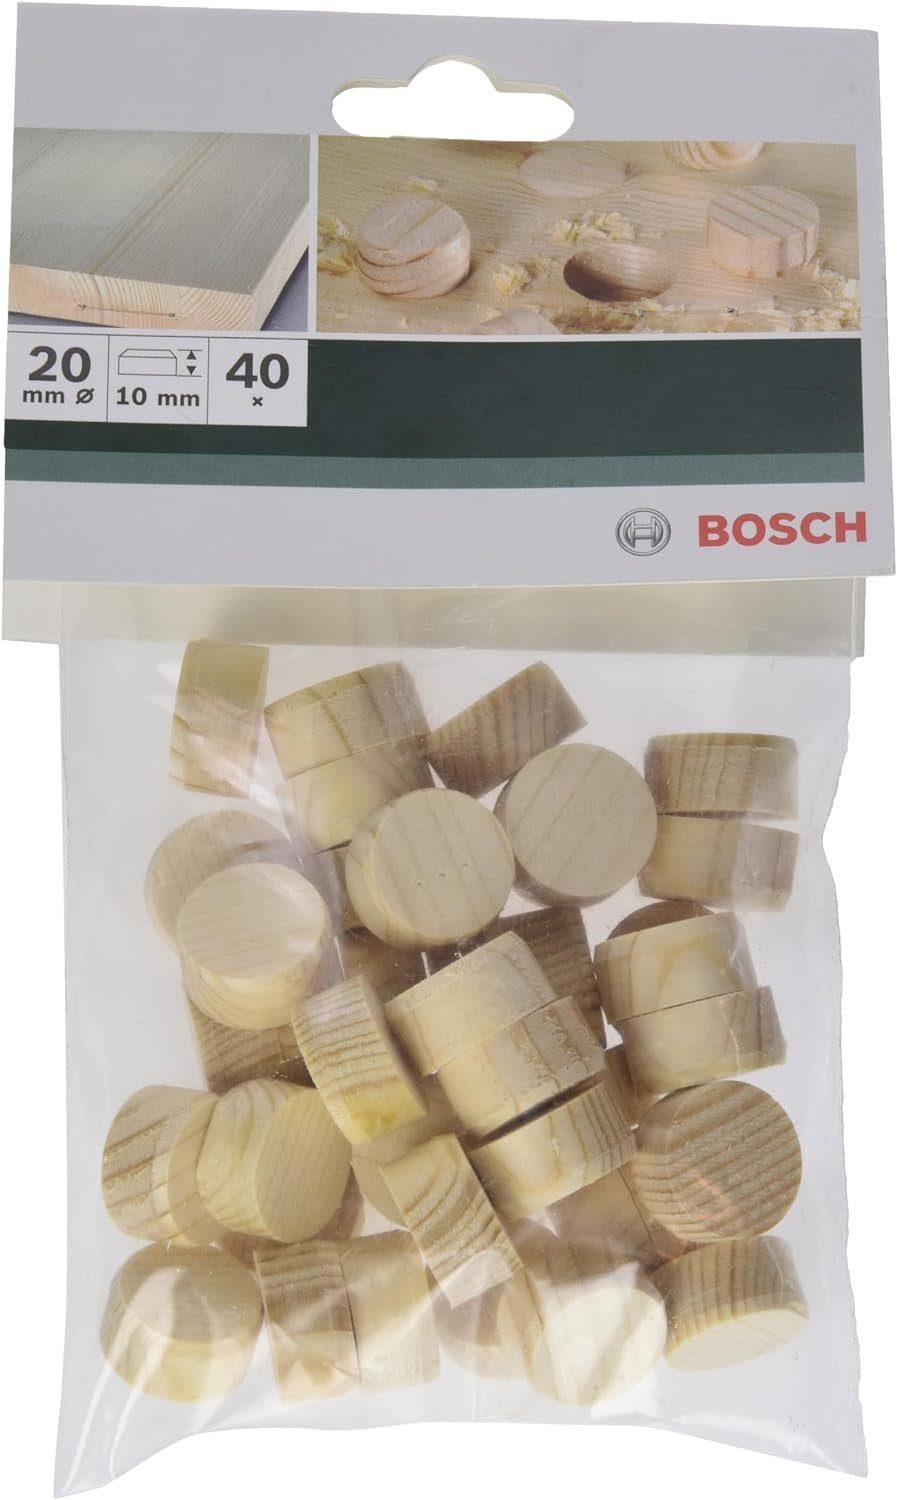 BOSCH Bohrfutter Bosch Holzzapfen Ø Stk mm 40 20